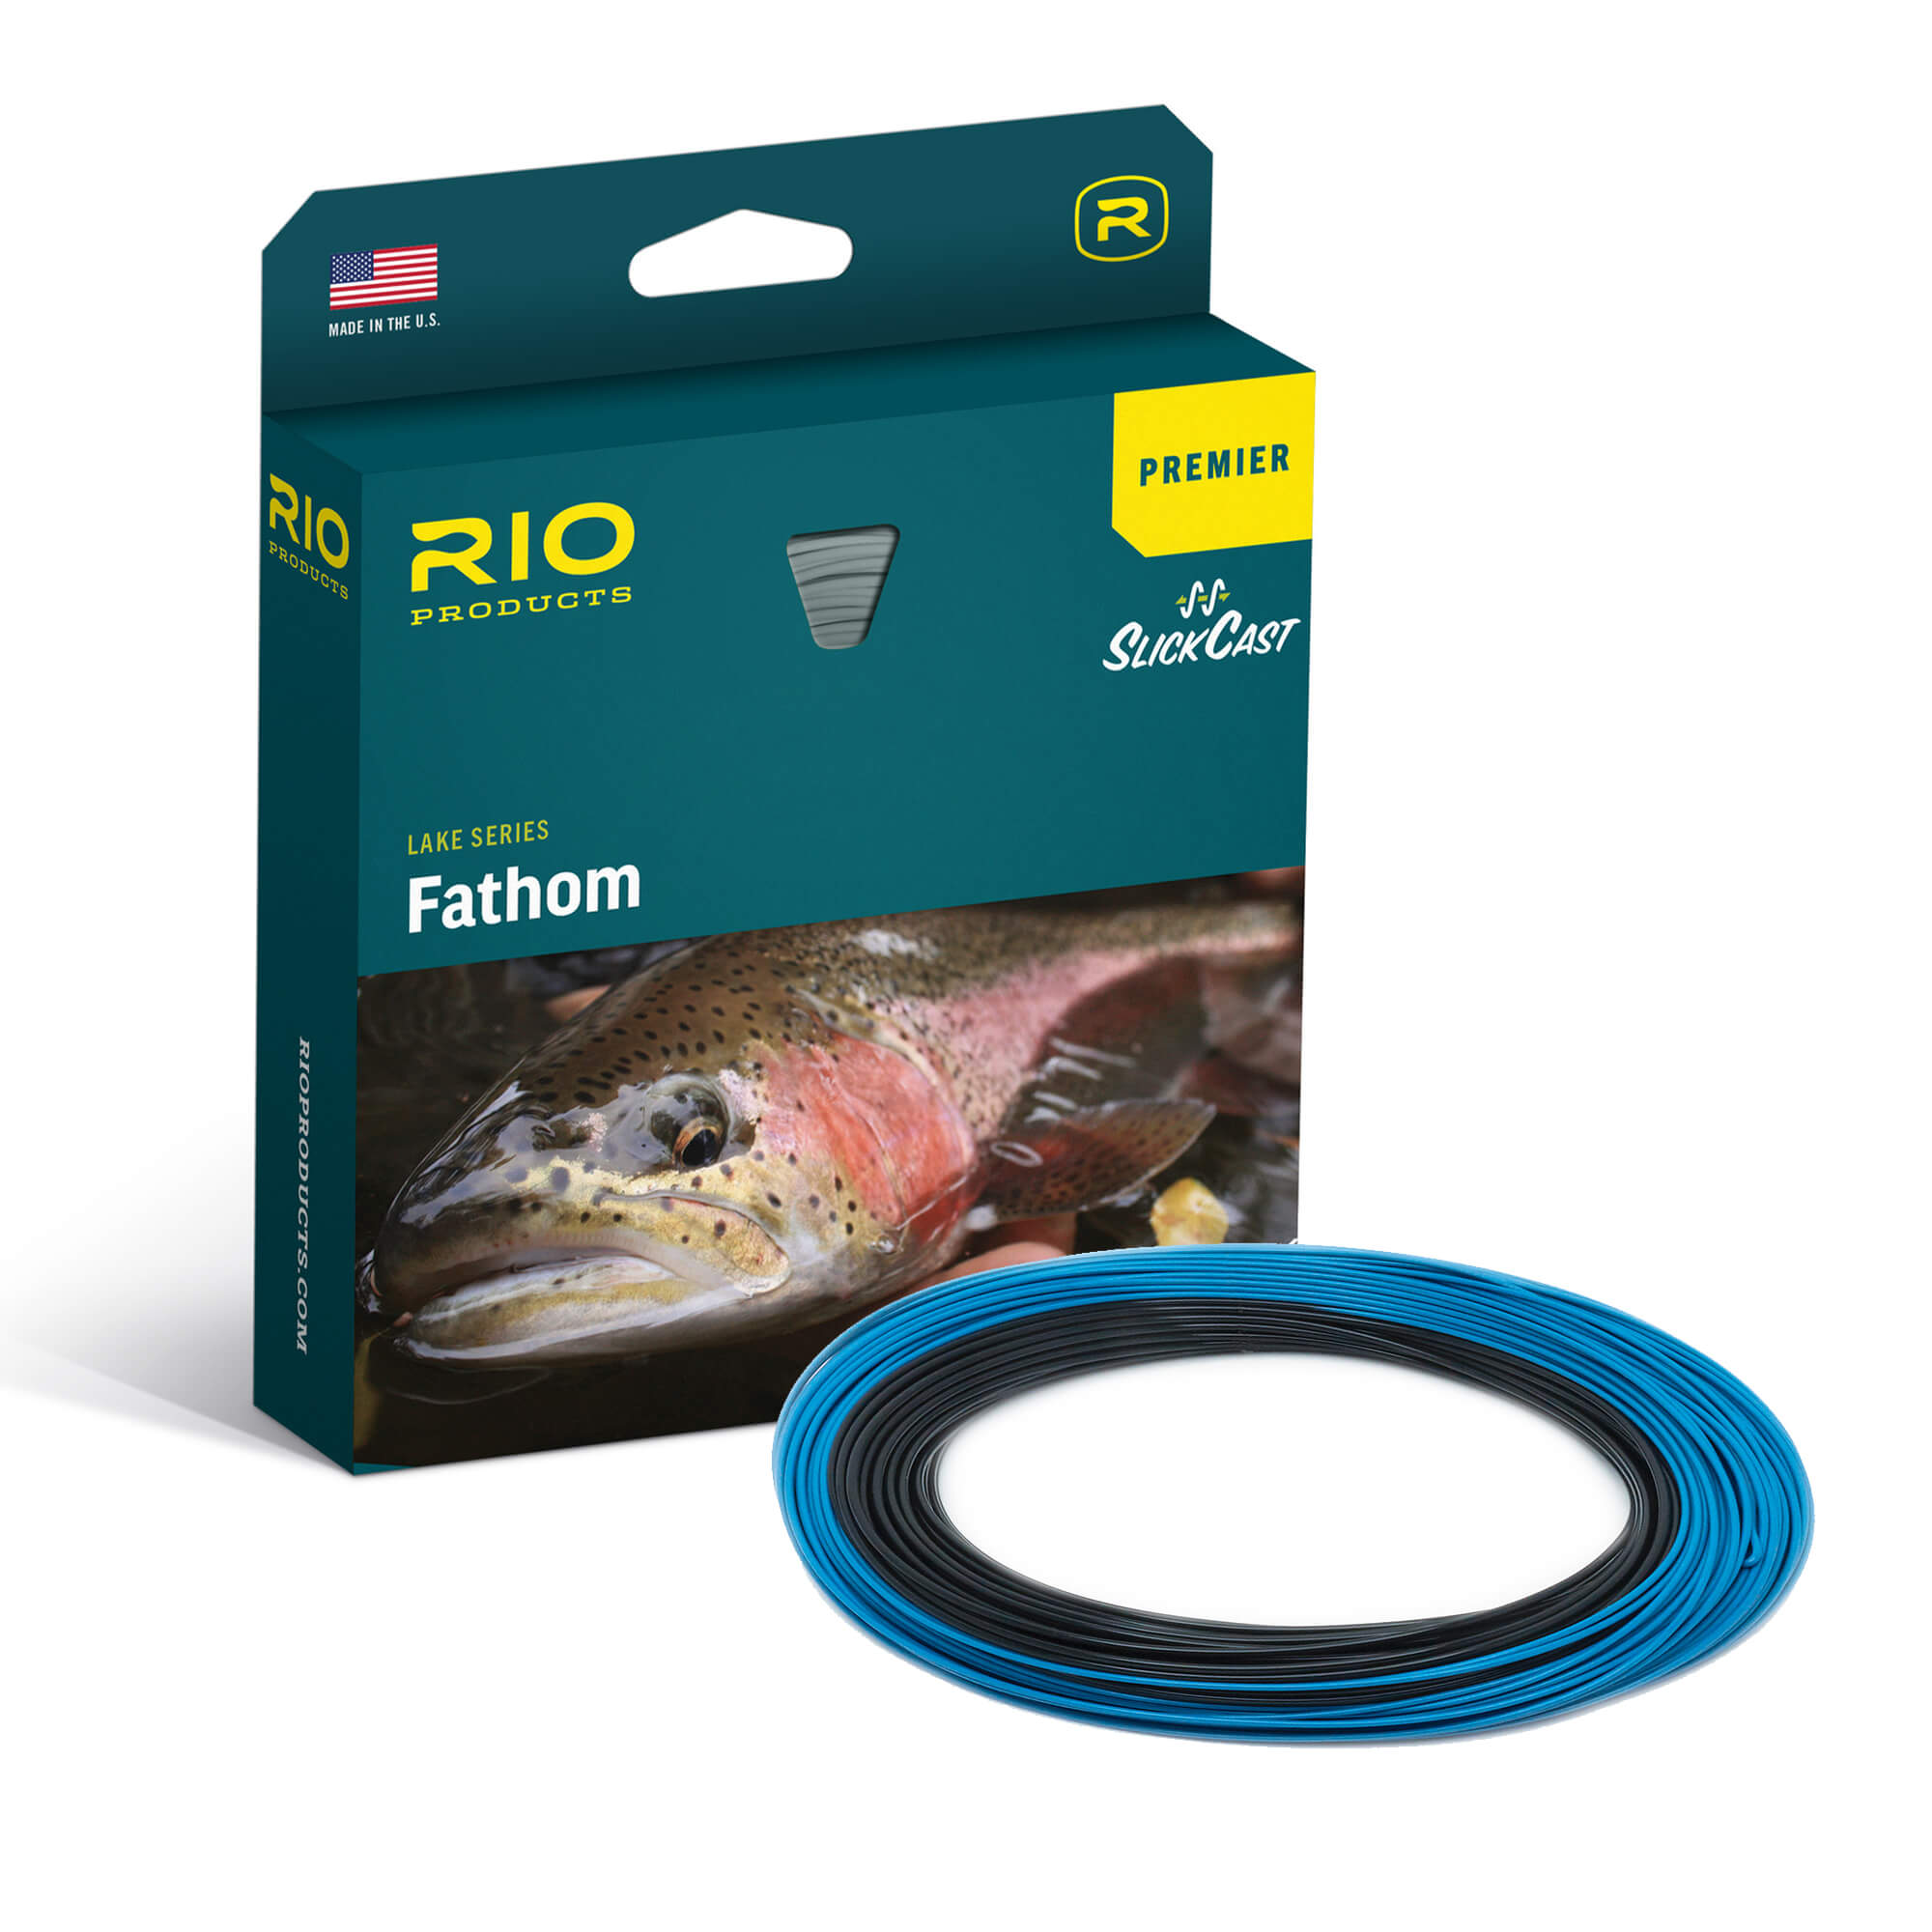 RIO Premier Fathom Fly Line – Guide Flyfishing, Fly Fishing Rods, Reels, Sage, Redington, RIO